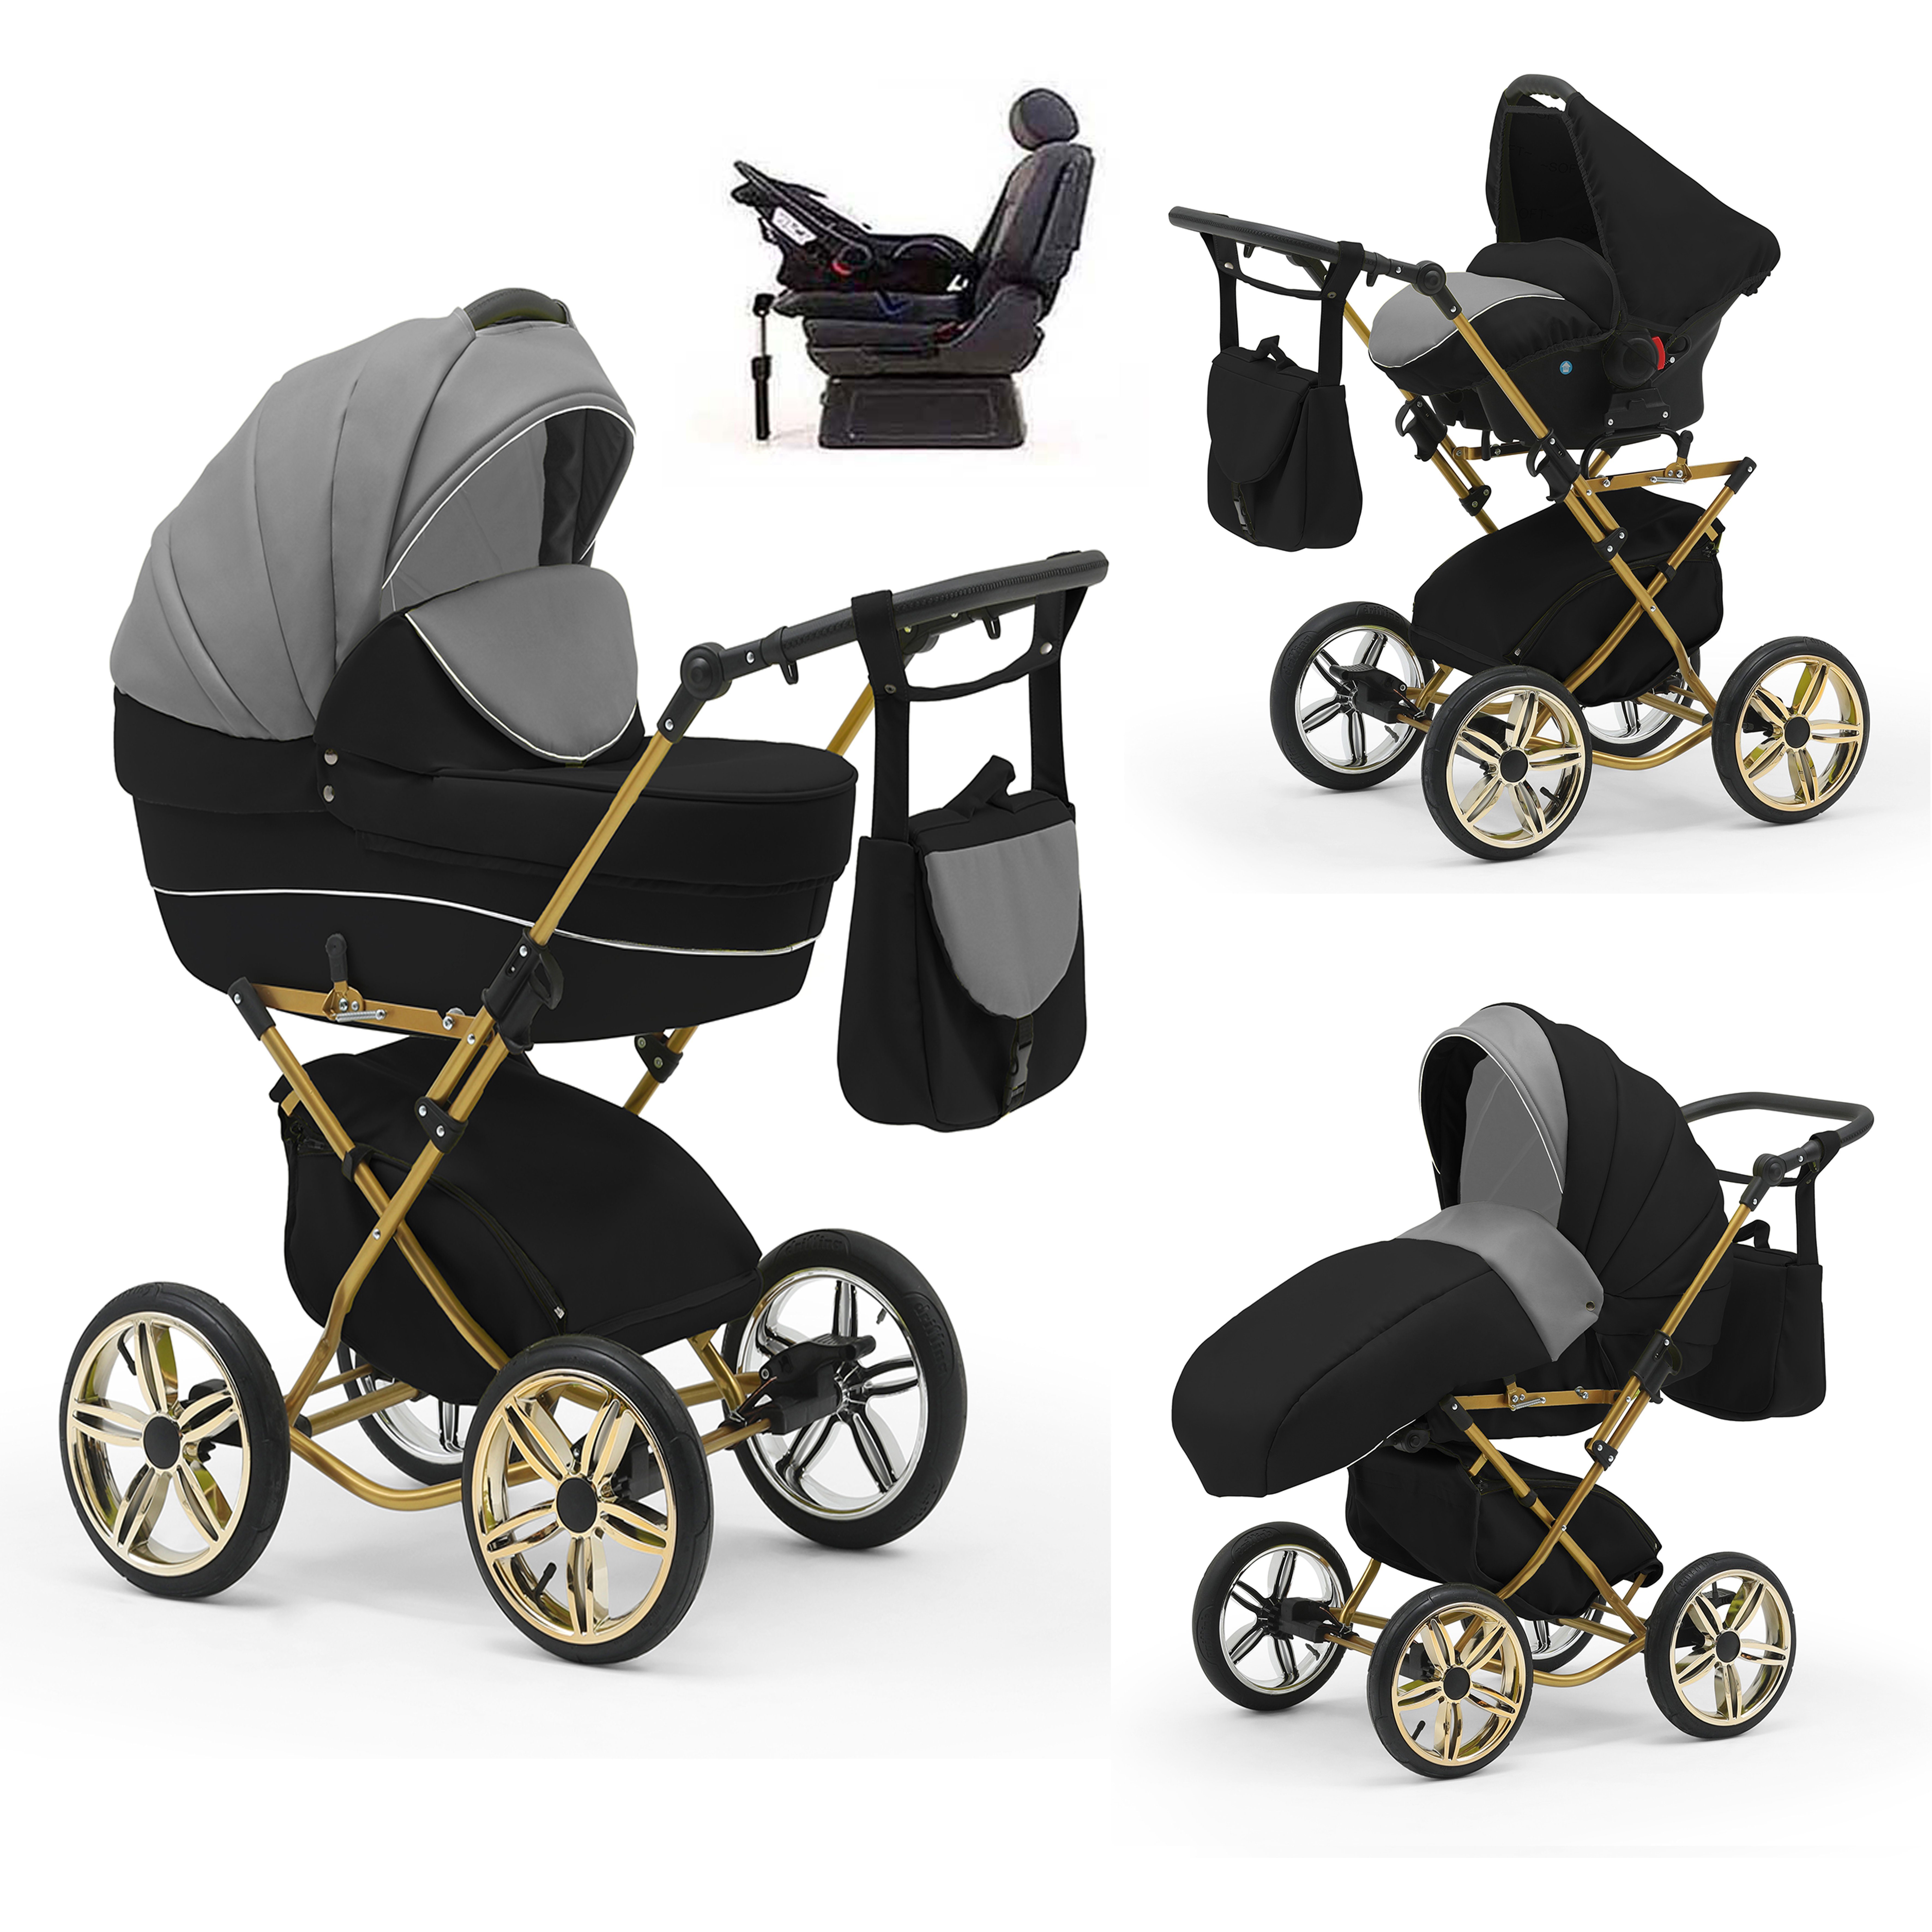 babies-on-wheels Kombi-Kinderwagen Sorento 4 in 1 inkl. Autositz und Iso Base - 14 Teile - in 10 Designs Grau-Schwarz